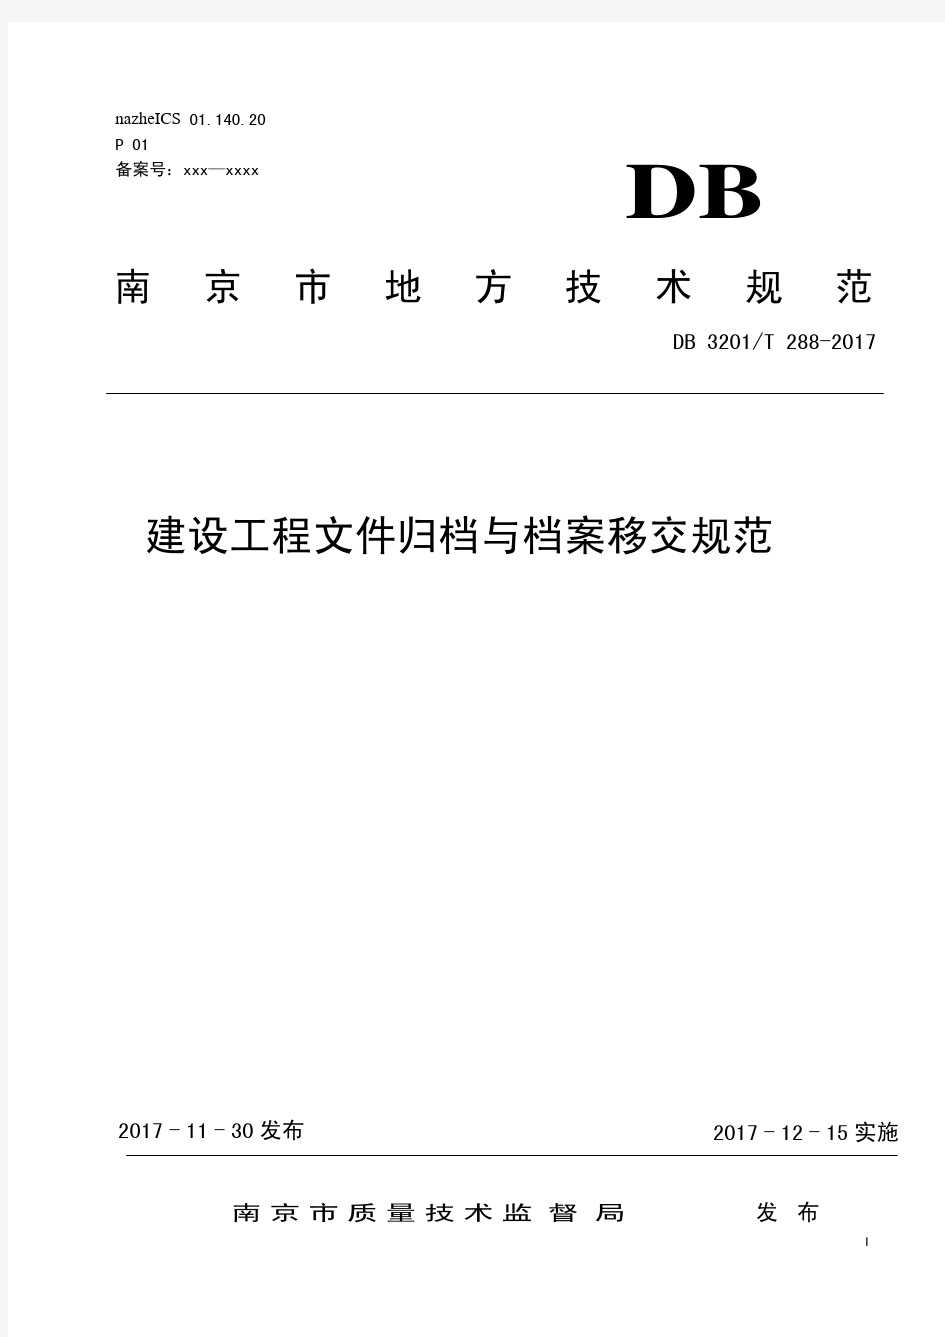 南京市建设工程文件归档与档案移交规范0313外